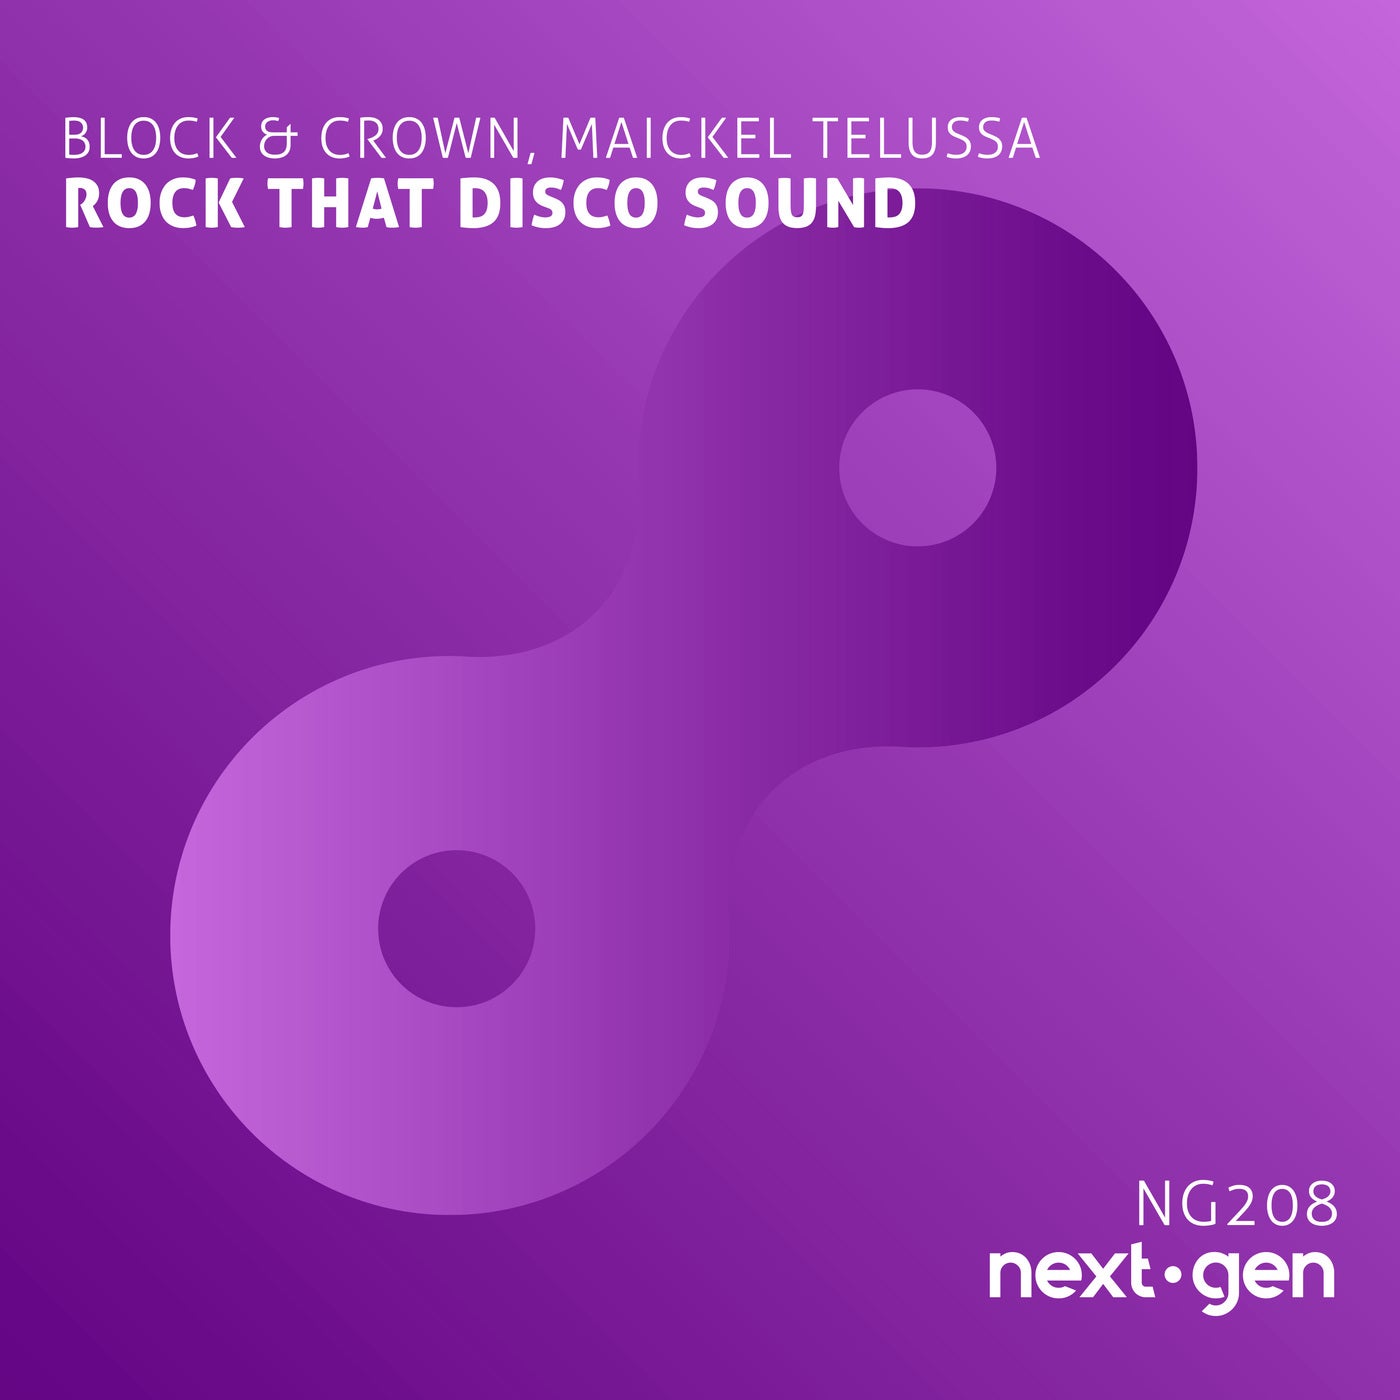 Rock That Disco Sound